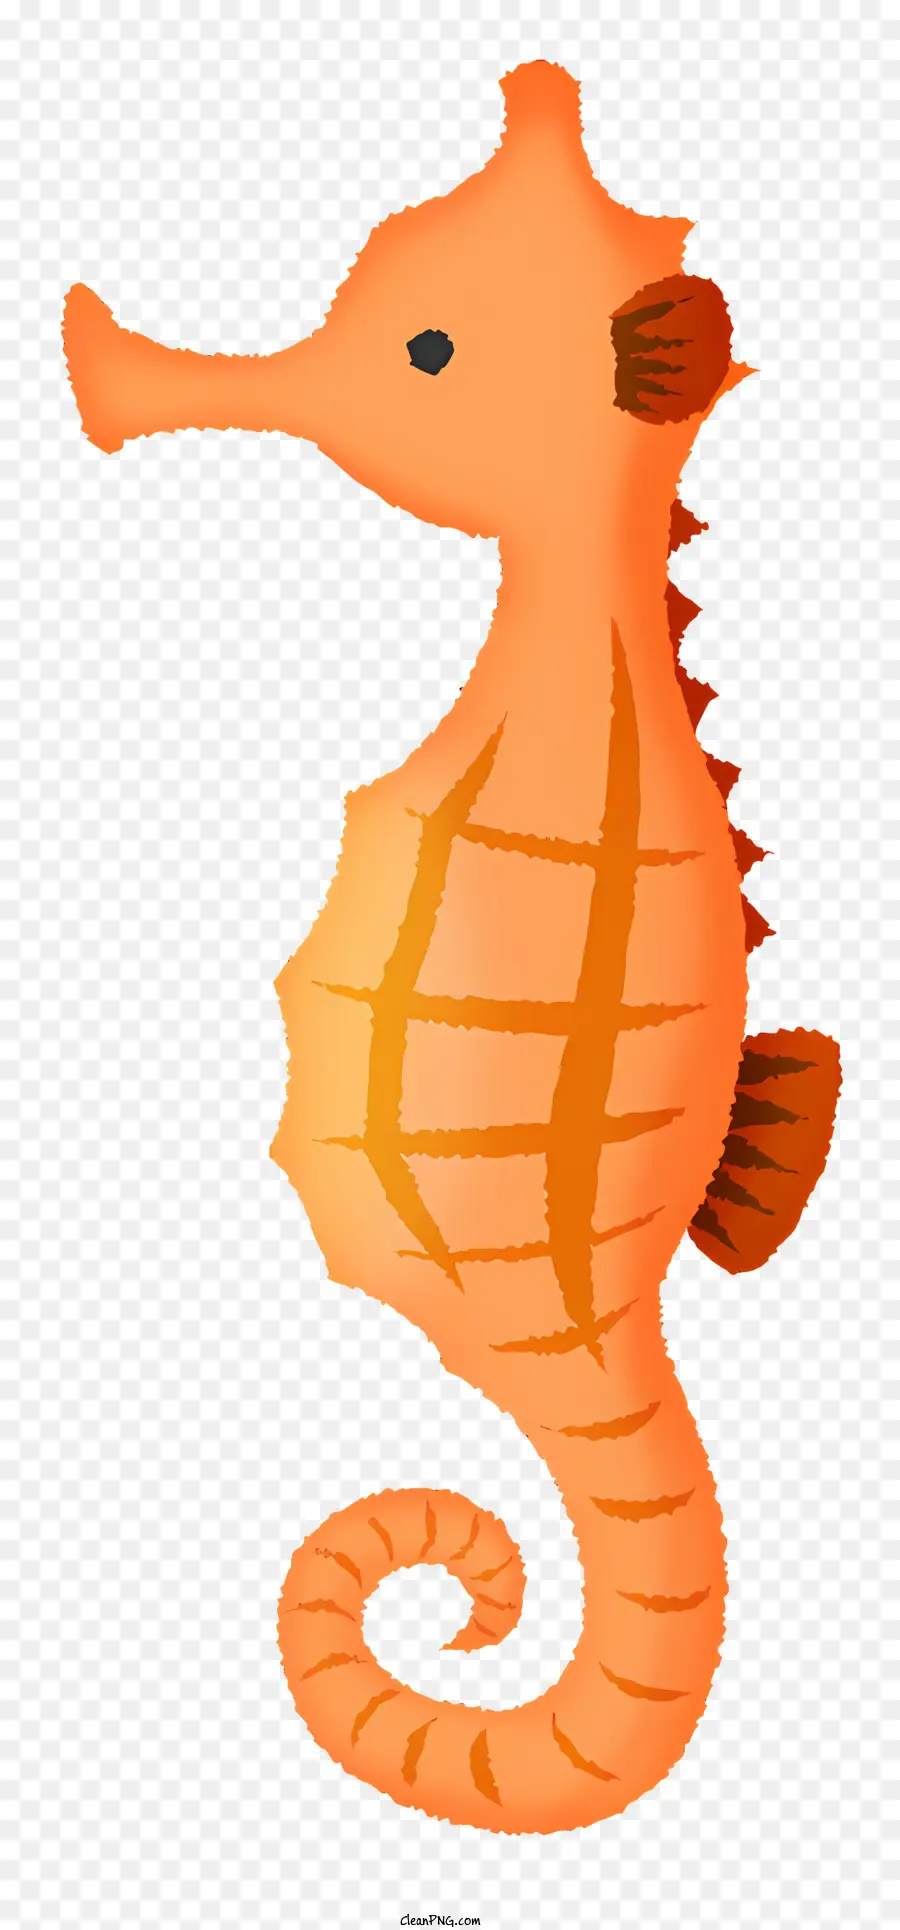 icon sea horse orange and black sea horse curved tail sea horse flipping sea horse